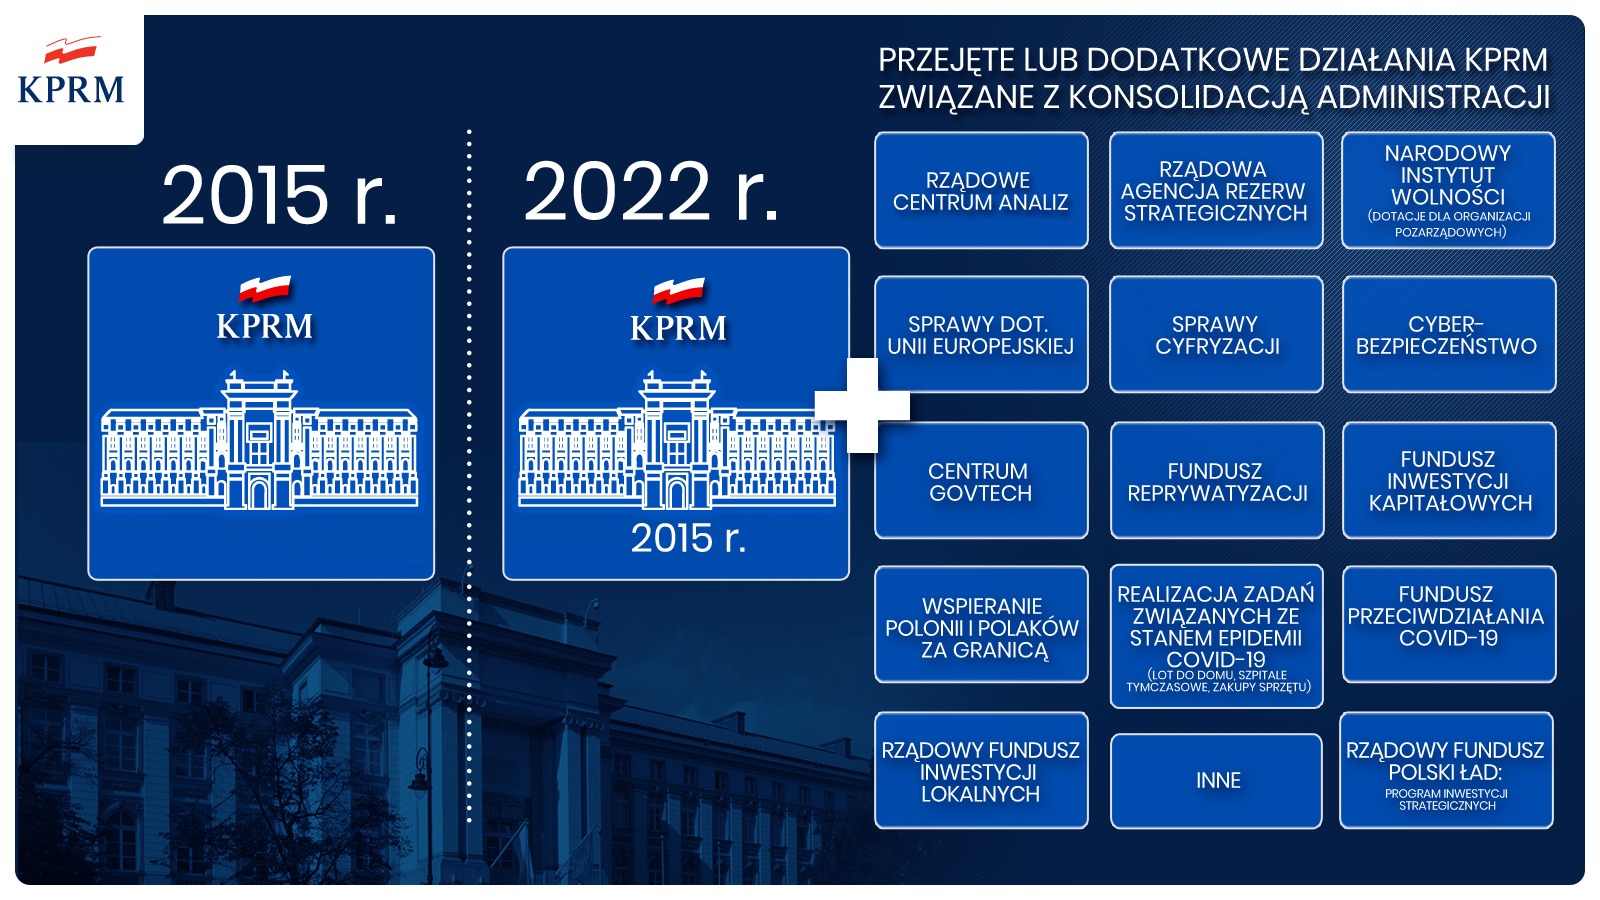 Dodatkowe działania KPRM związane z konsolidacją administracji.